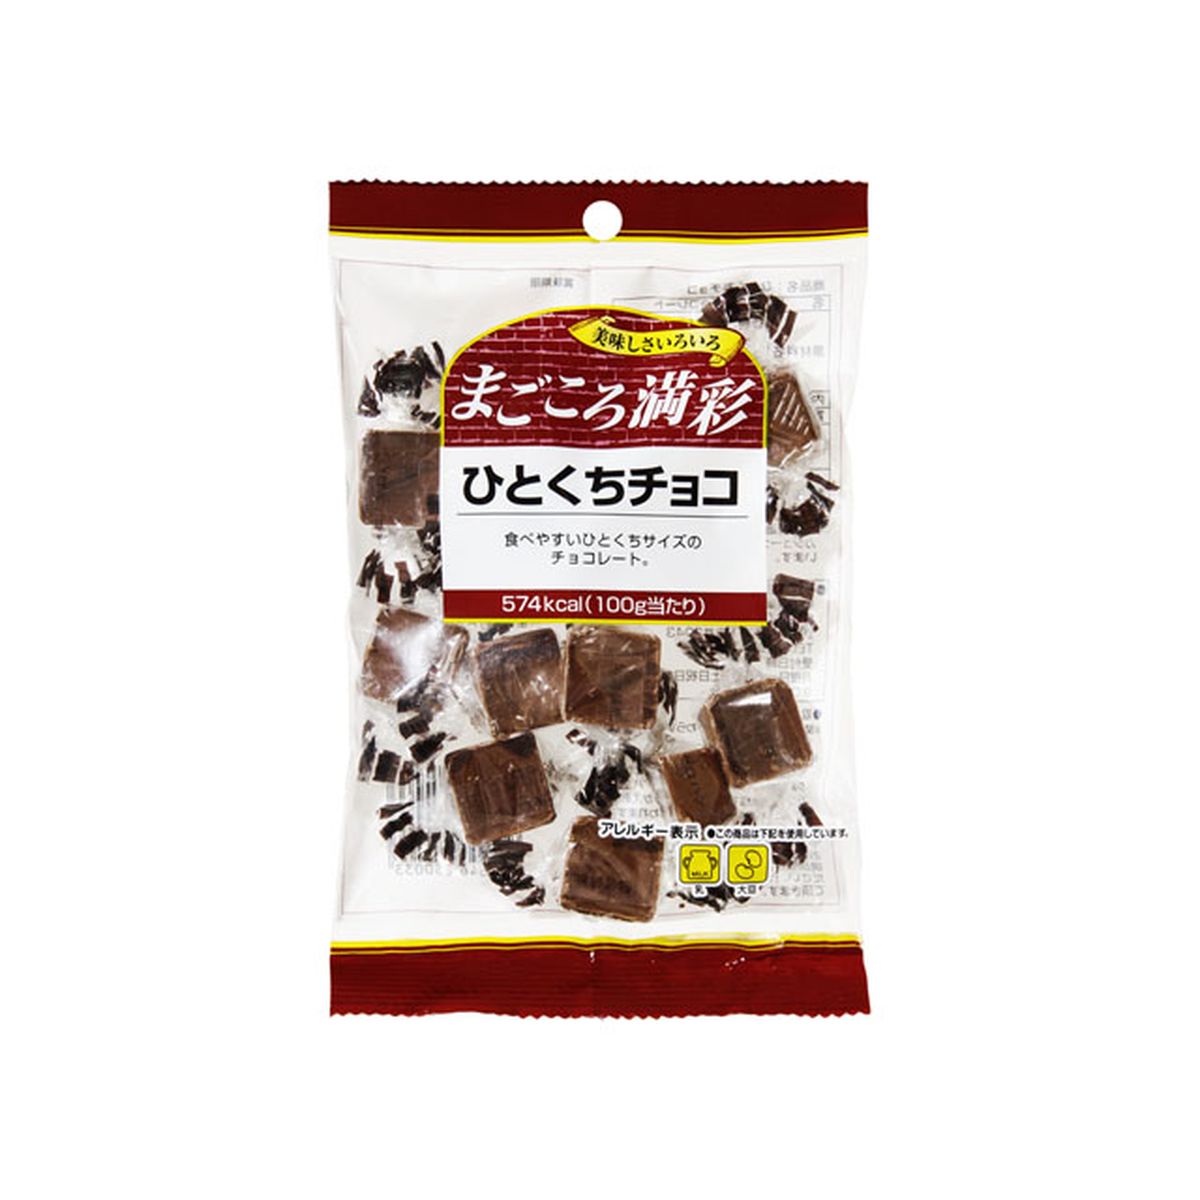 【12個入り】寺沢製菓 まごころ満彩 ひとくちチョコレート 71g